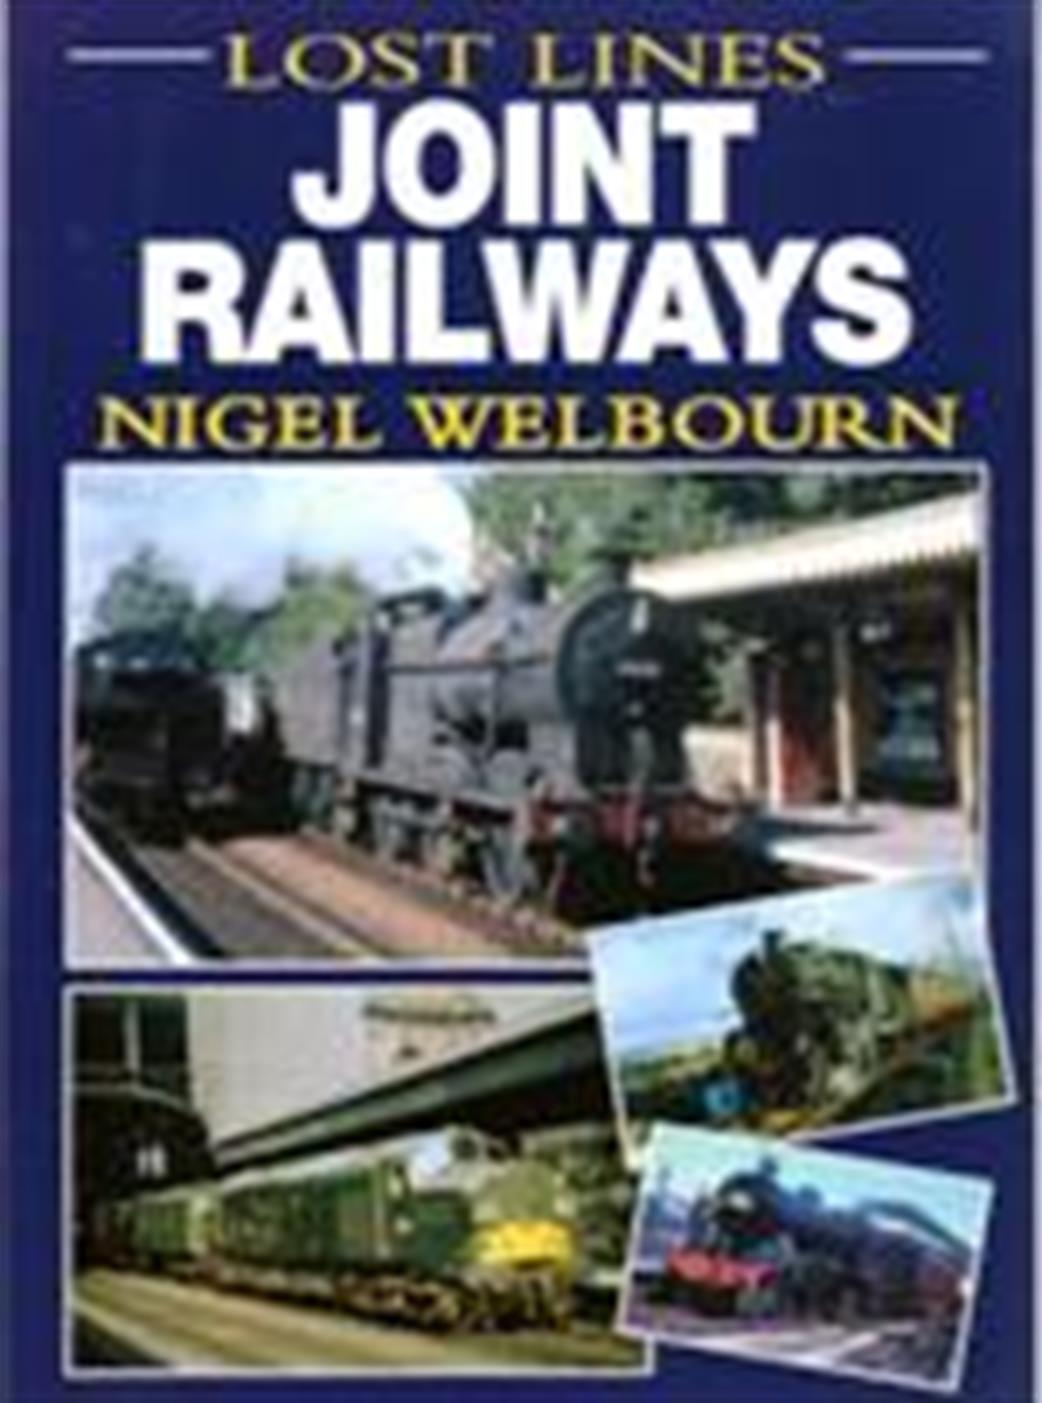 Ian Allan Publishing 9780711034280 Lost Lines Joint Railways by Nigel Welbourn